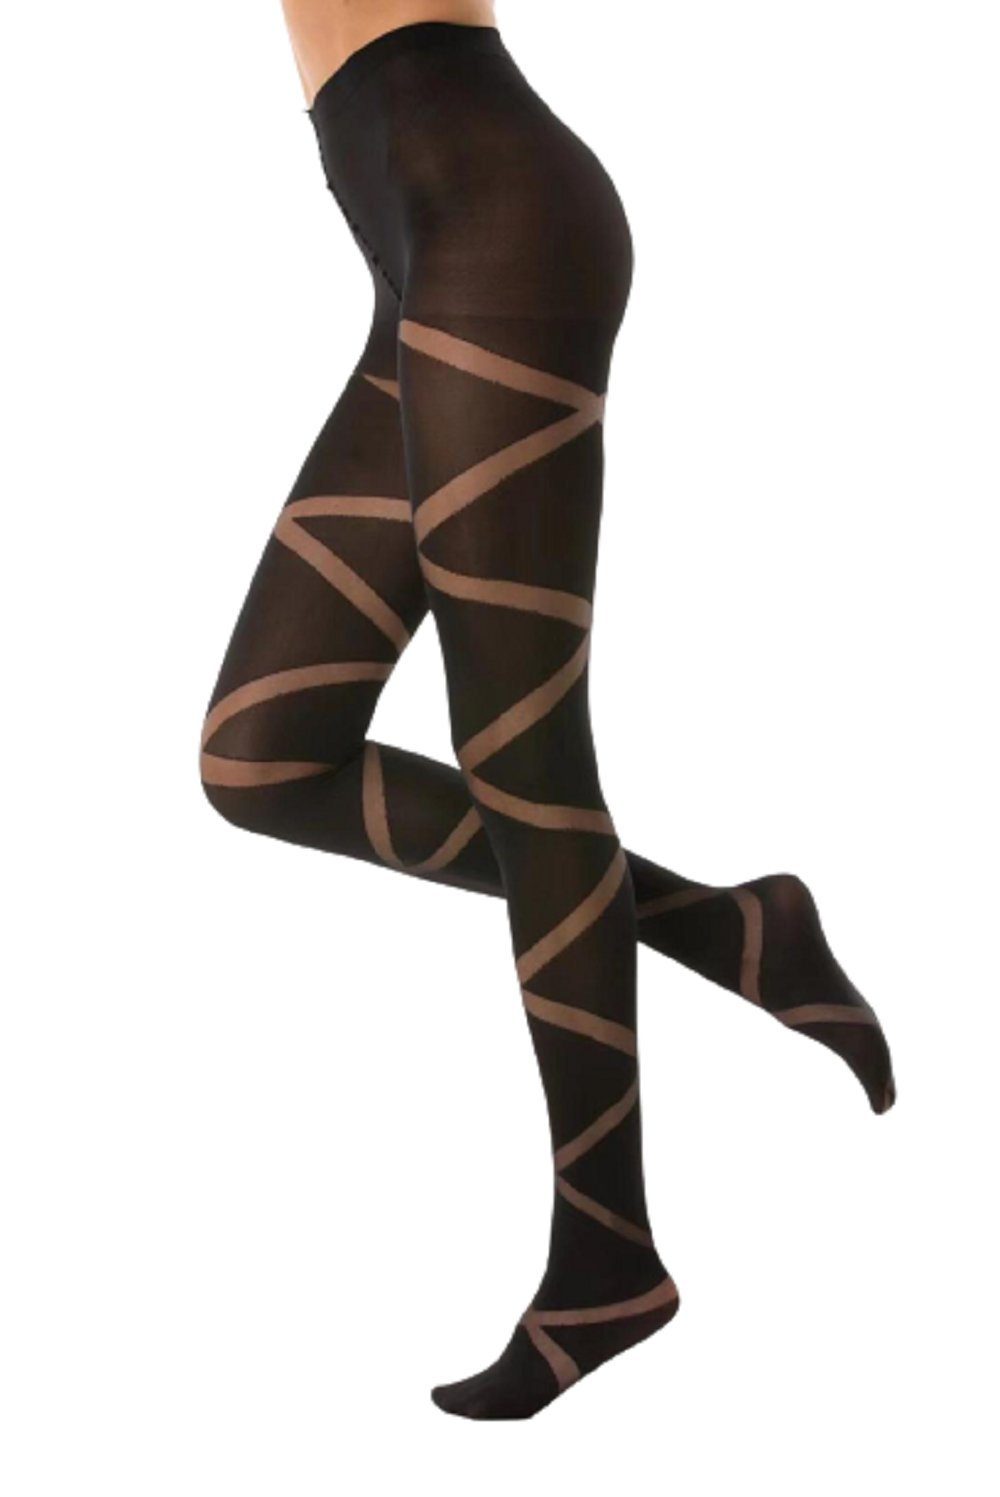 80 Streifen mit Muster Strumpfhose schwarz Frauen Damen Hose cofi1453 Muster Feinstrumpfhose N.1587 Nero Socken DEN